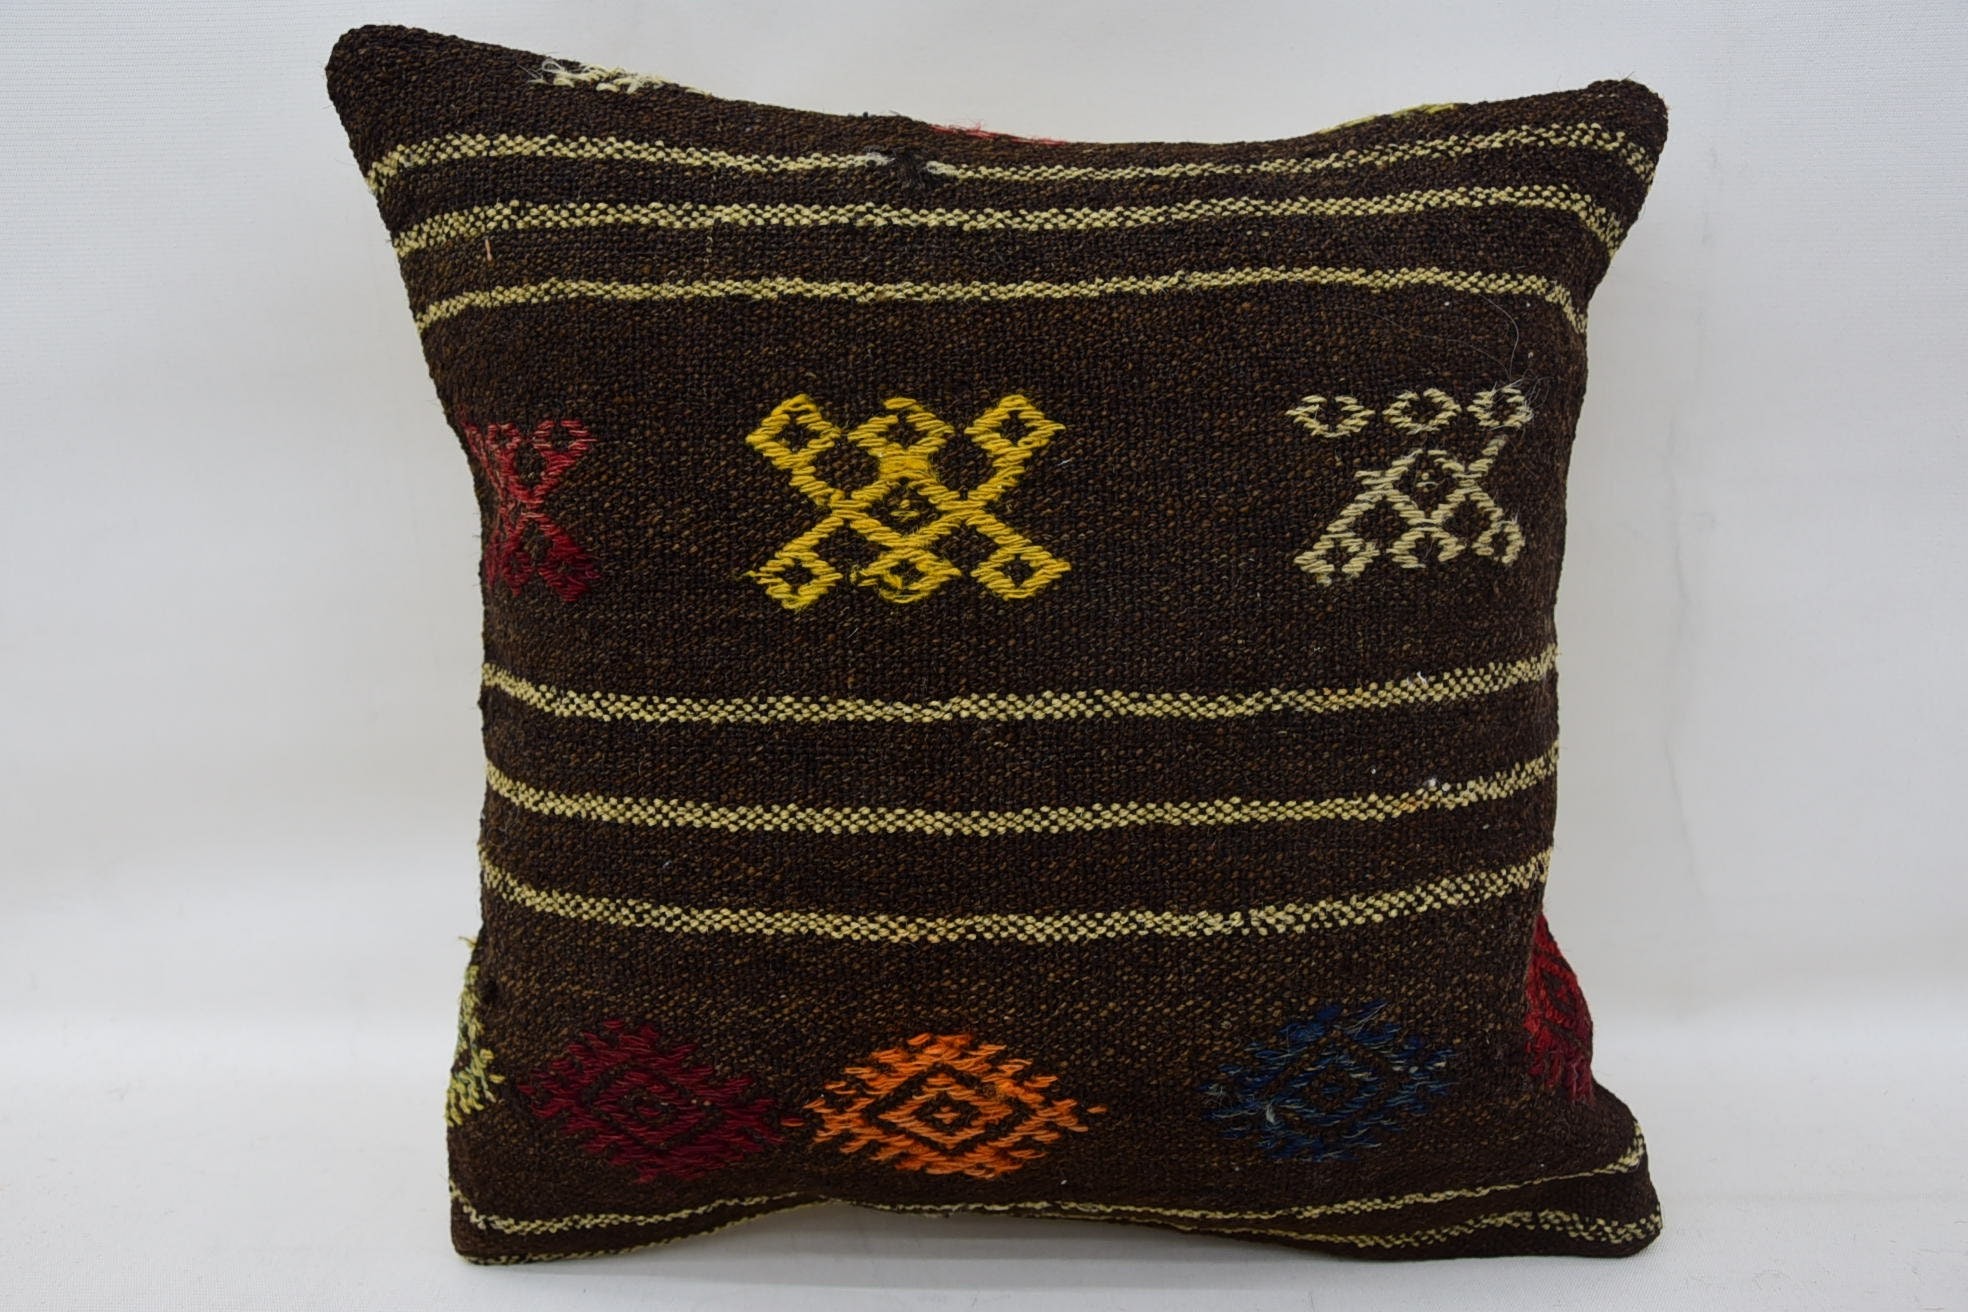 Cotton Pillow, Kilim Pillow, Vintage Kilim Throw Pillow, Turkish Rugs Pillow Sham, 14"x14" Brown Cushion Cover, Kilim Cushion Sham